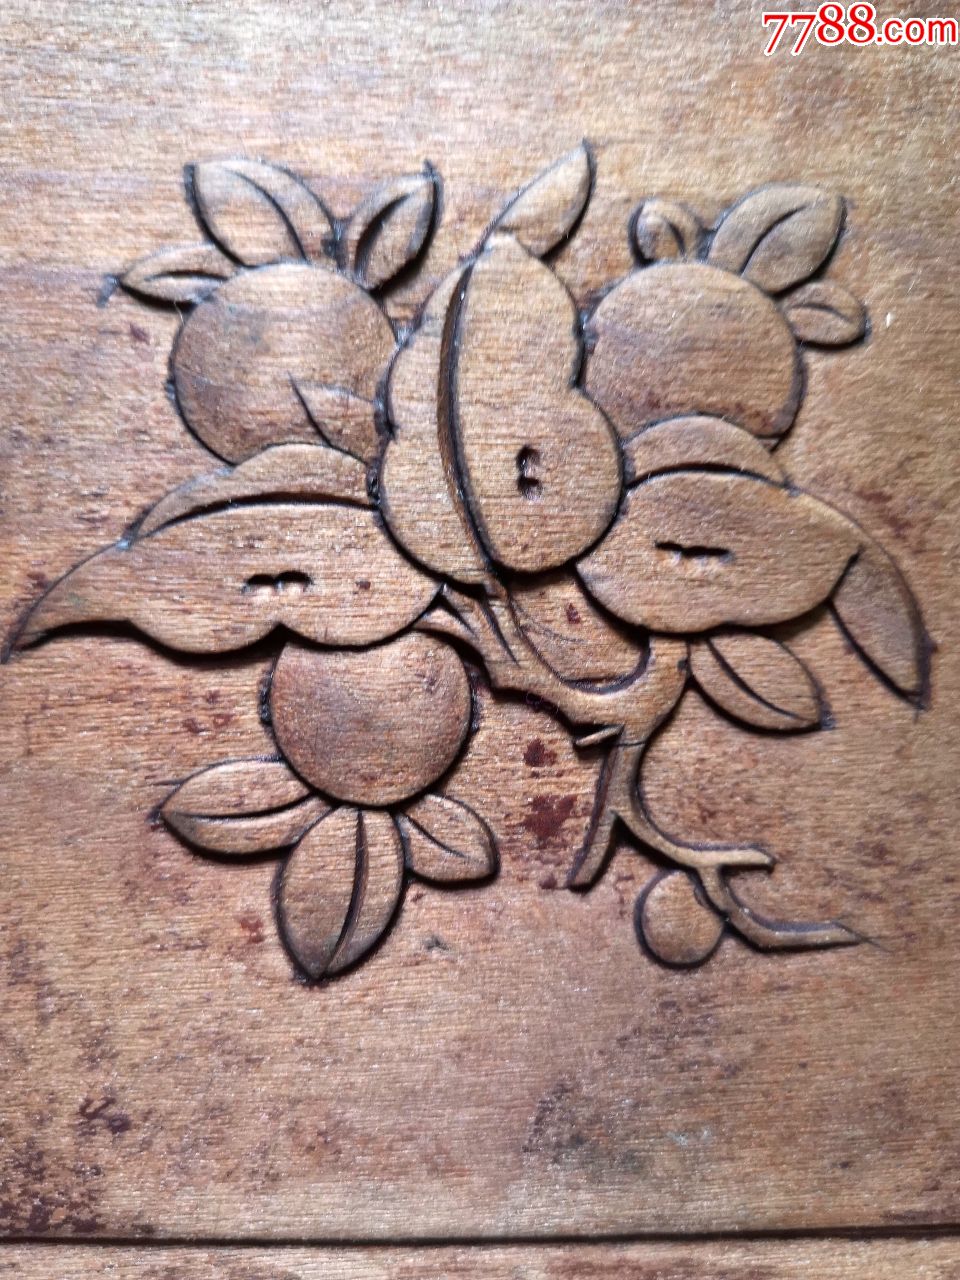 木板雕花的图样图片